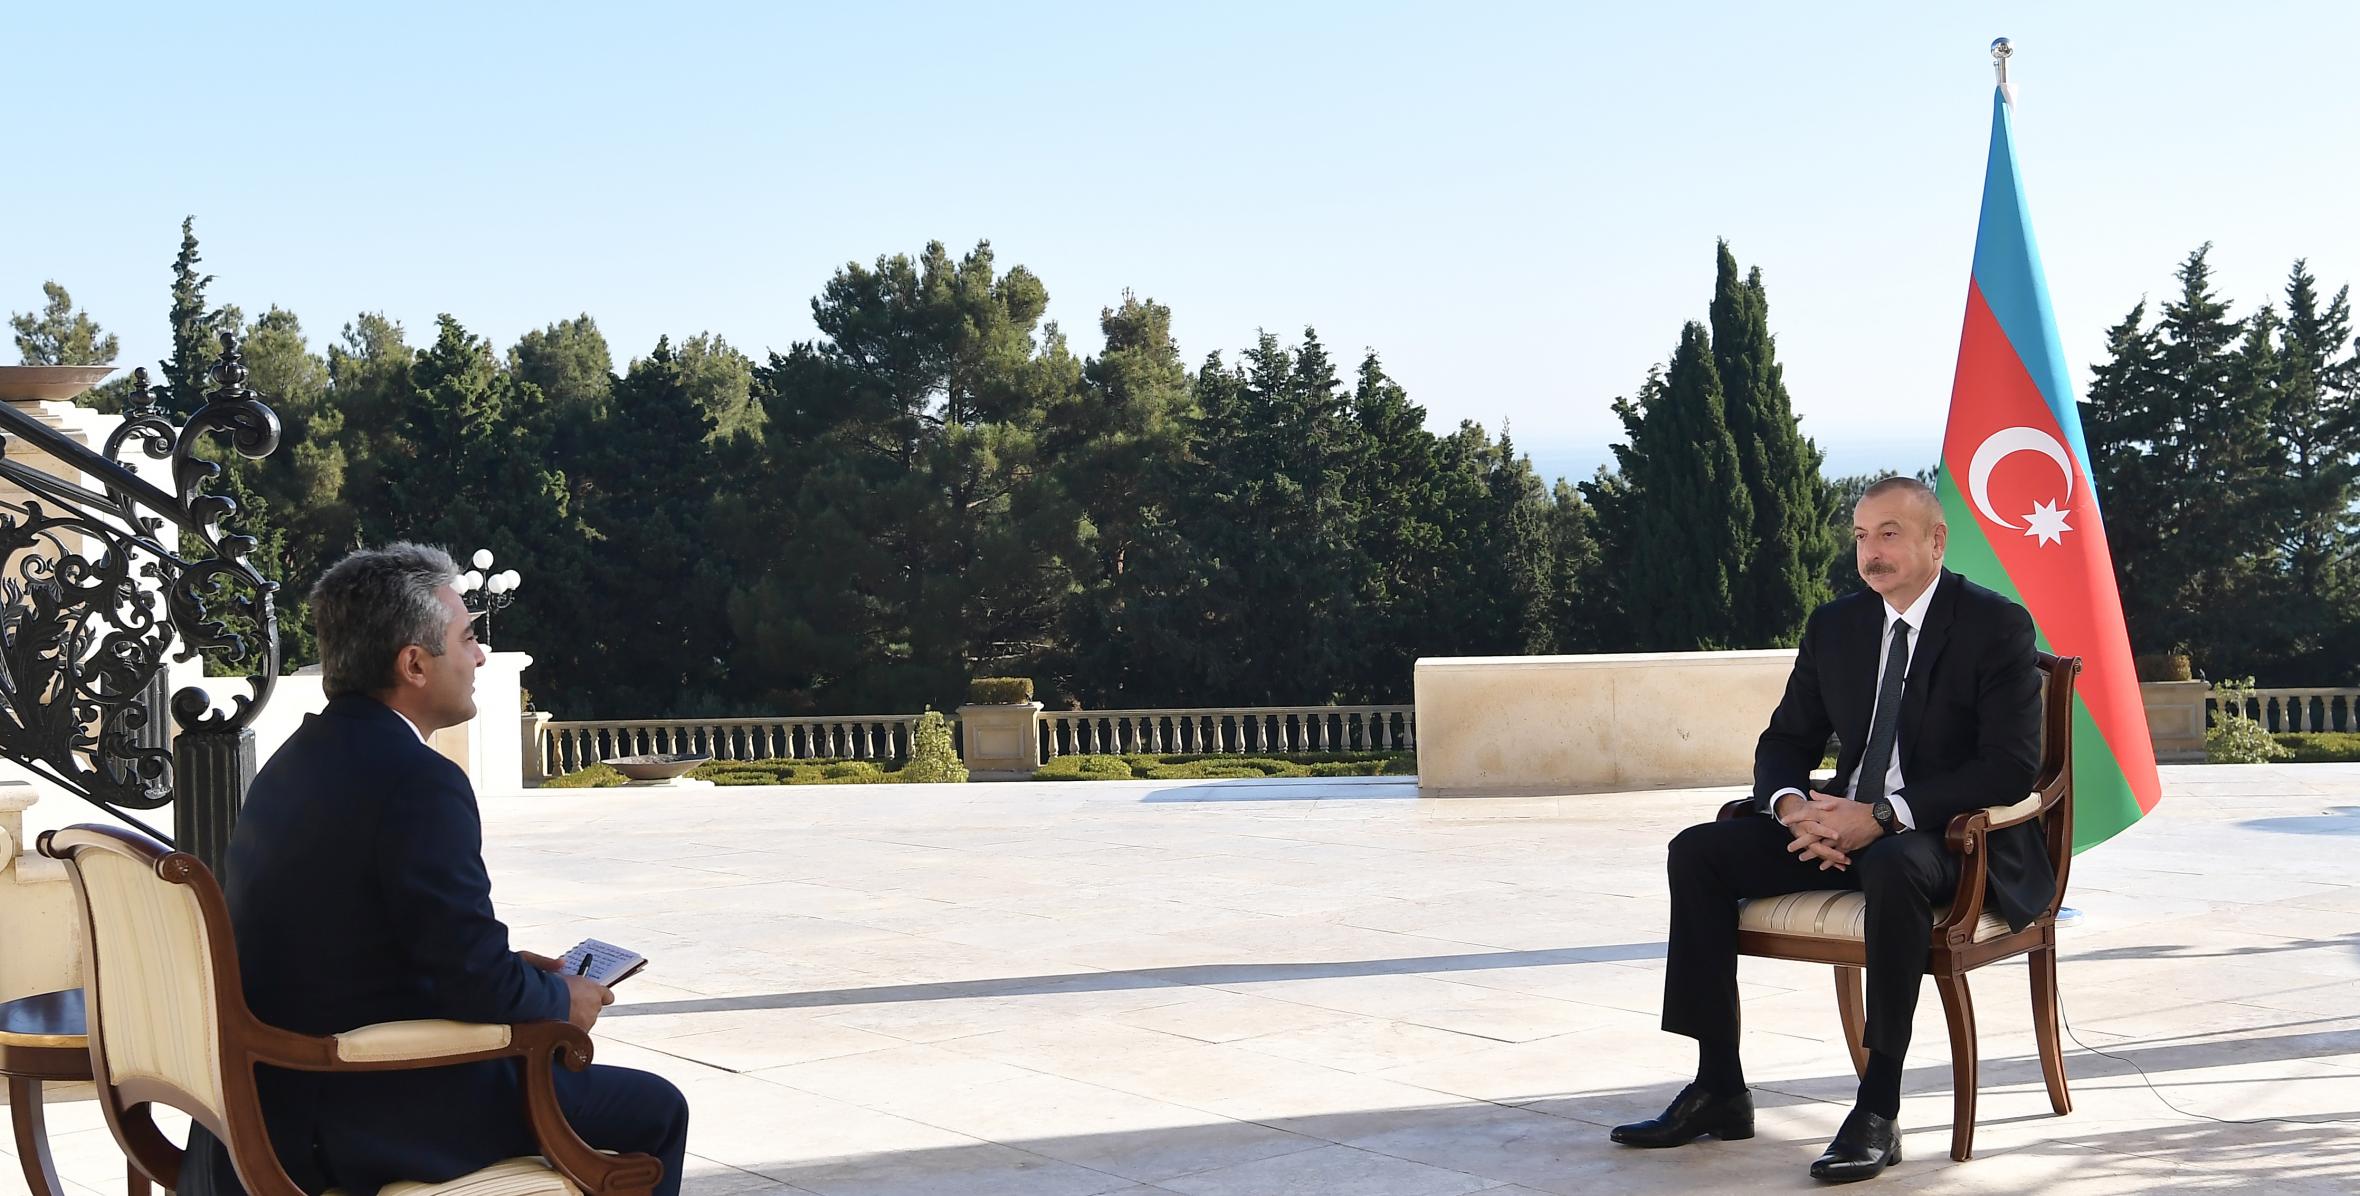 Ilham Aliyev was interviewed by Turkish A Haber TV channel